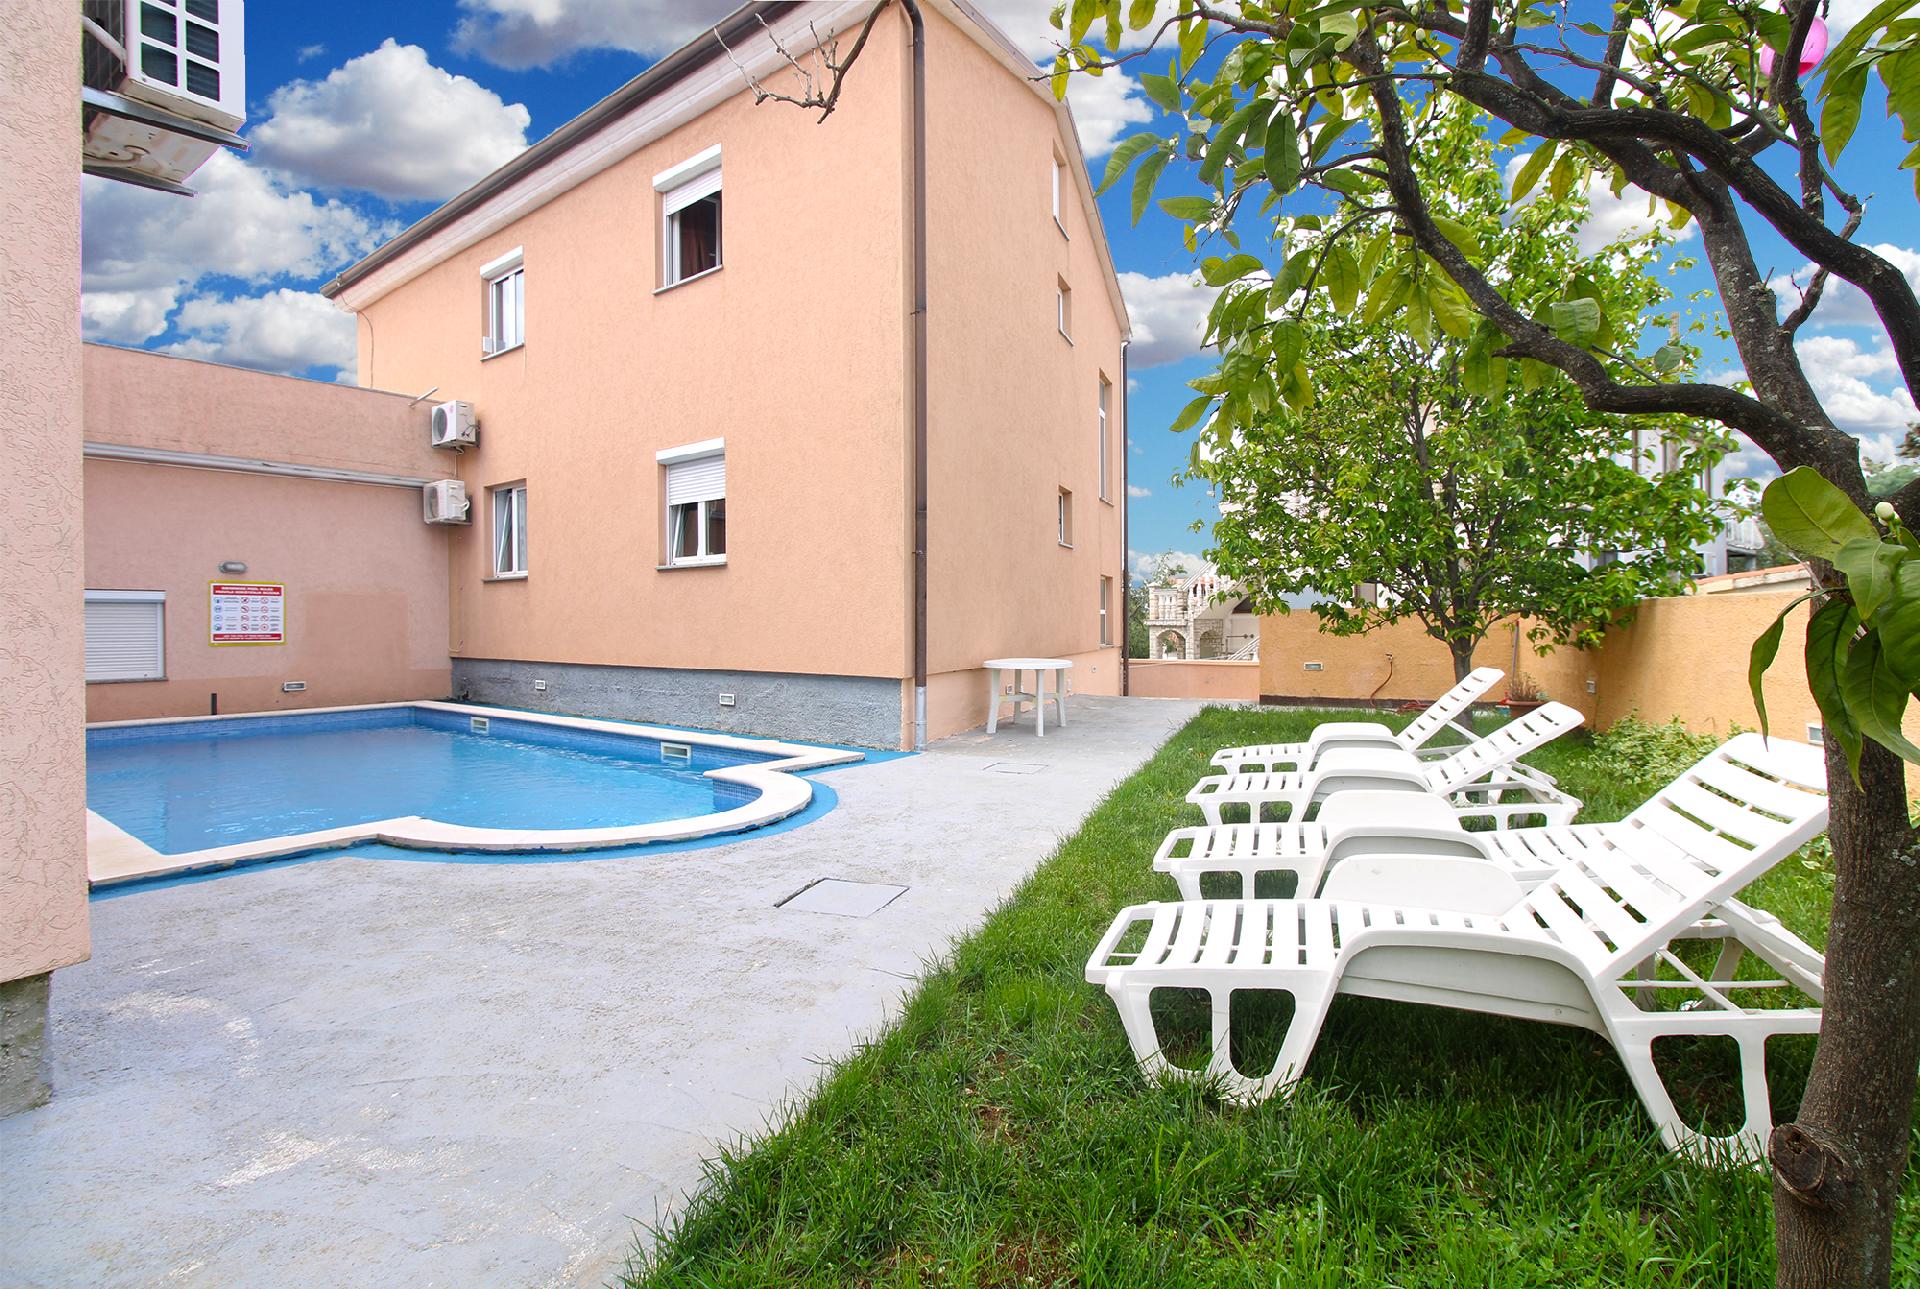 Ferienwohnung für 5 Personen ca. 54 m² i  in Kroatien